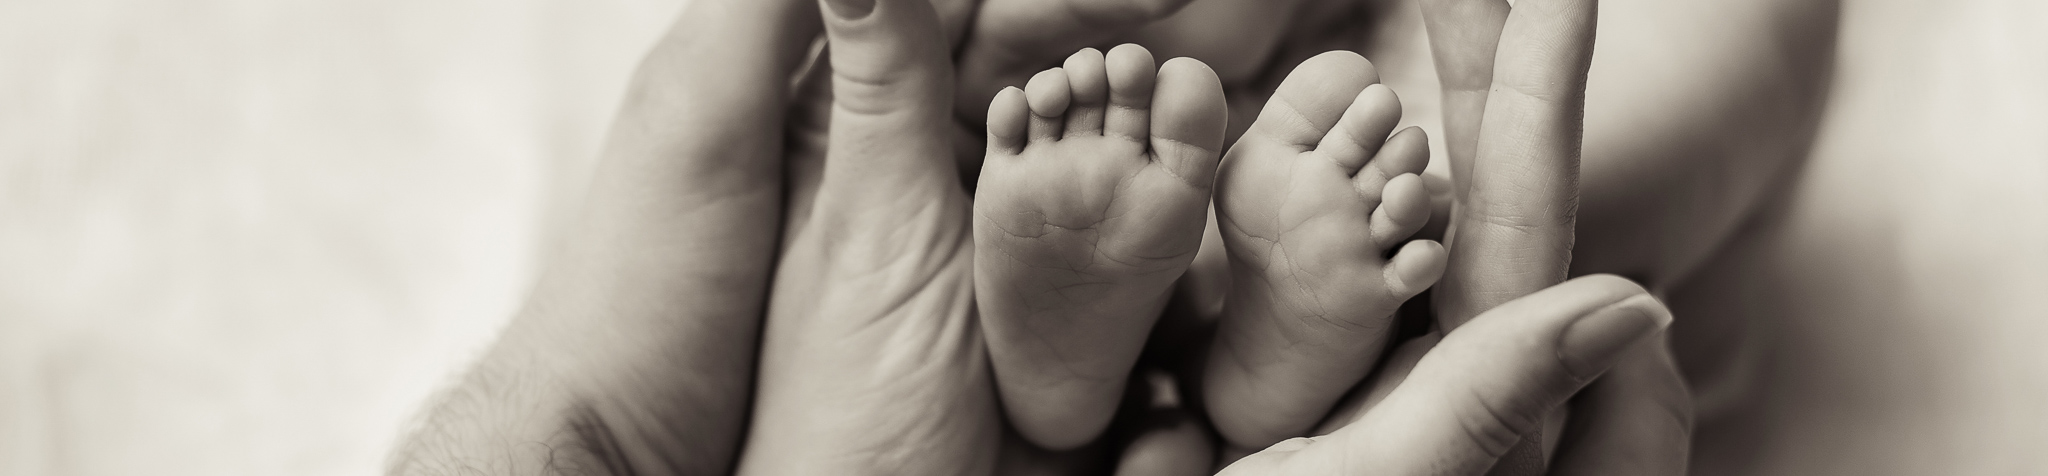 Geburt Füße eines Neugeborenen